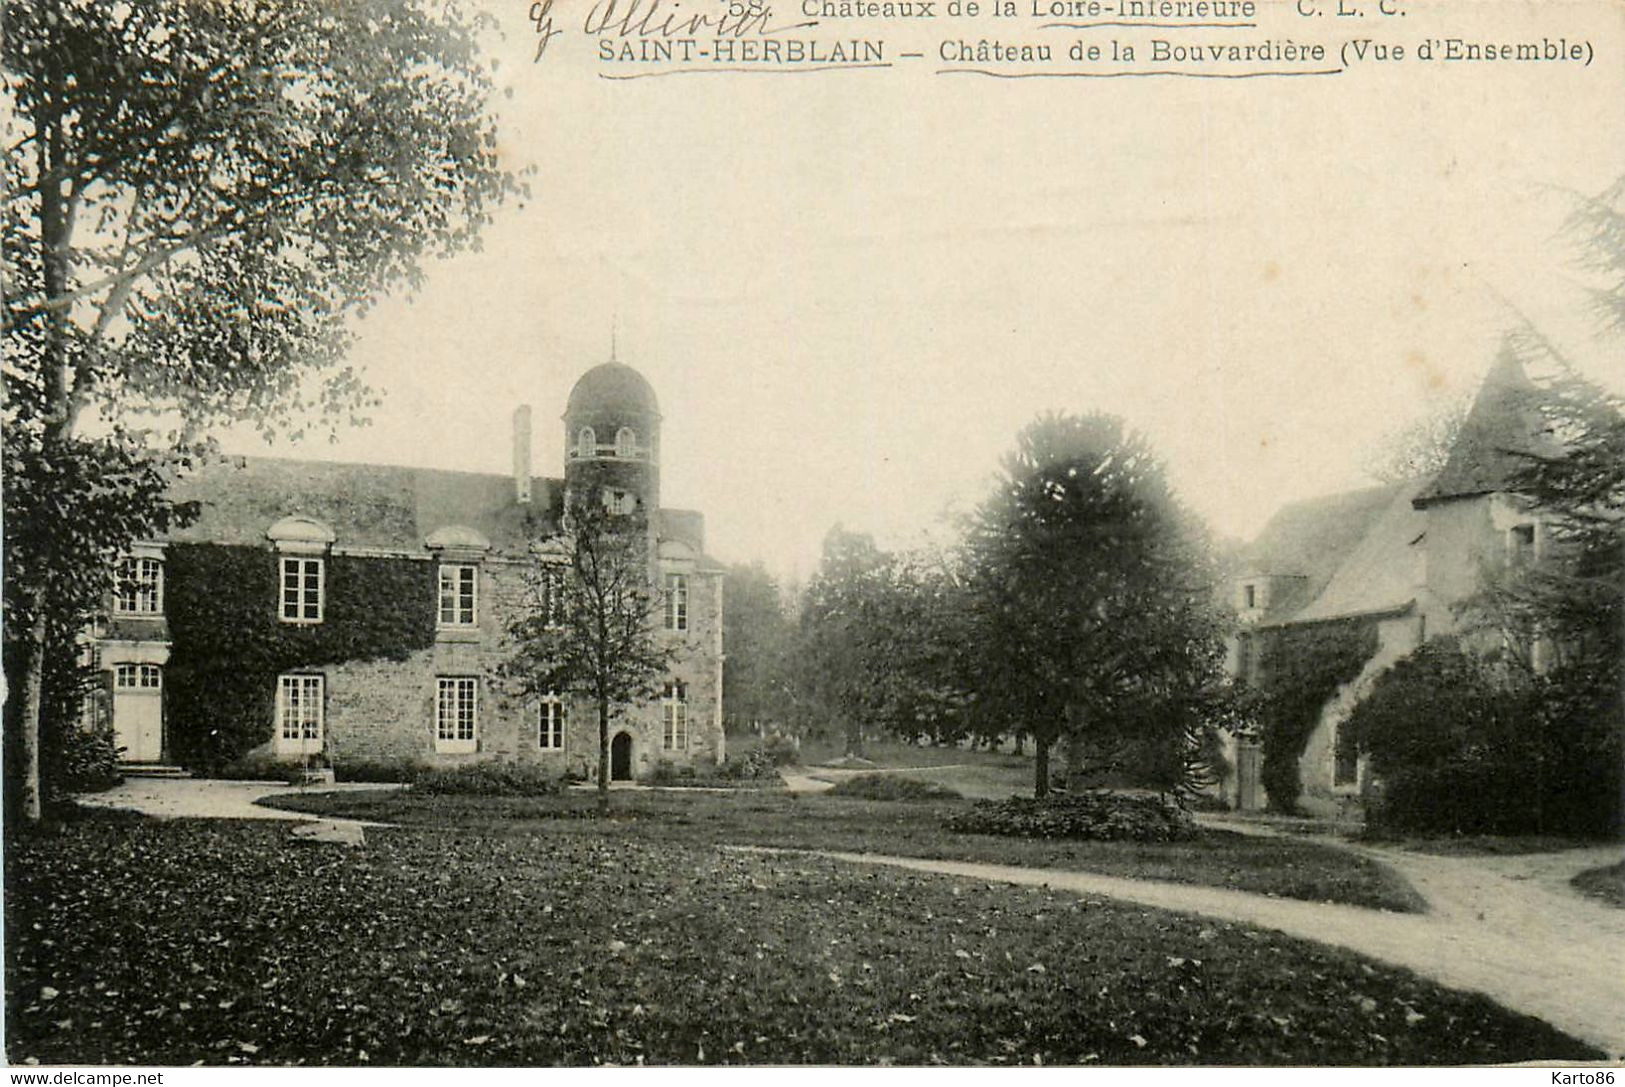 St Herblain * Le Château De La Bouvardière * Châteaux De La Loire Inférieure N°58 - Saint Herblain